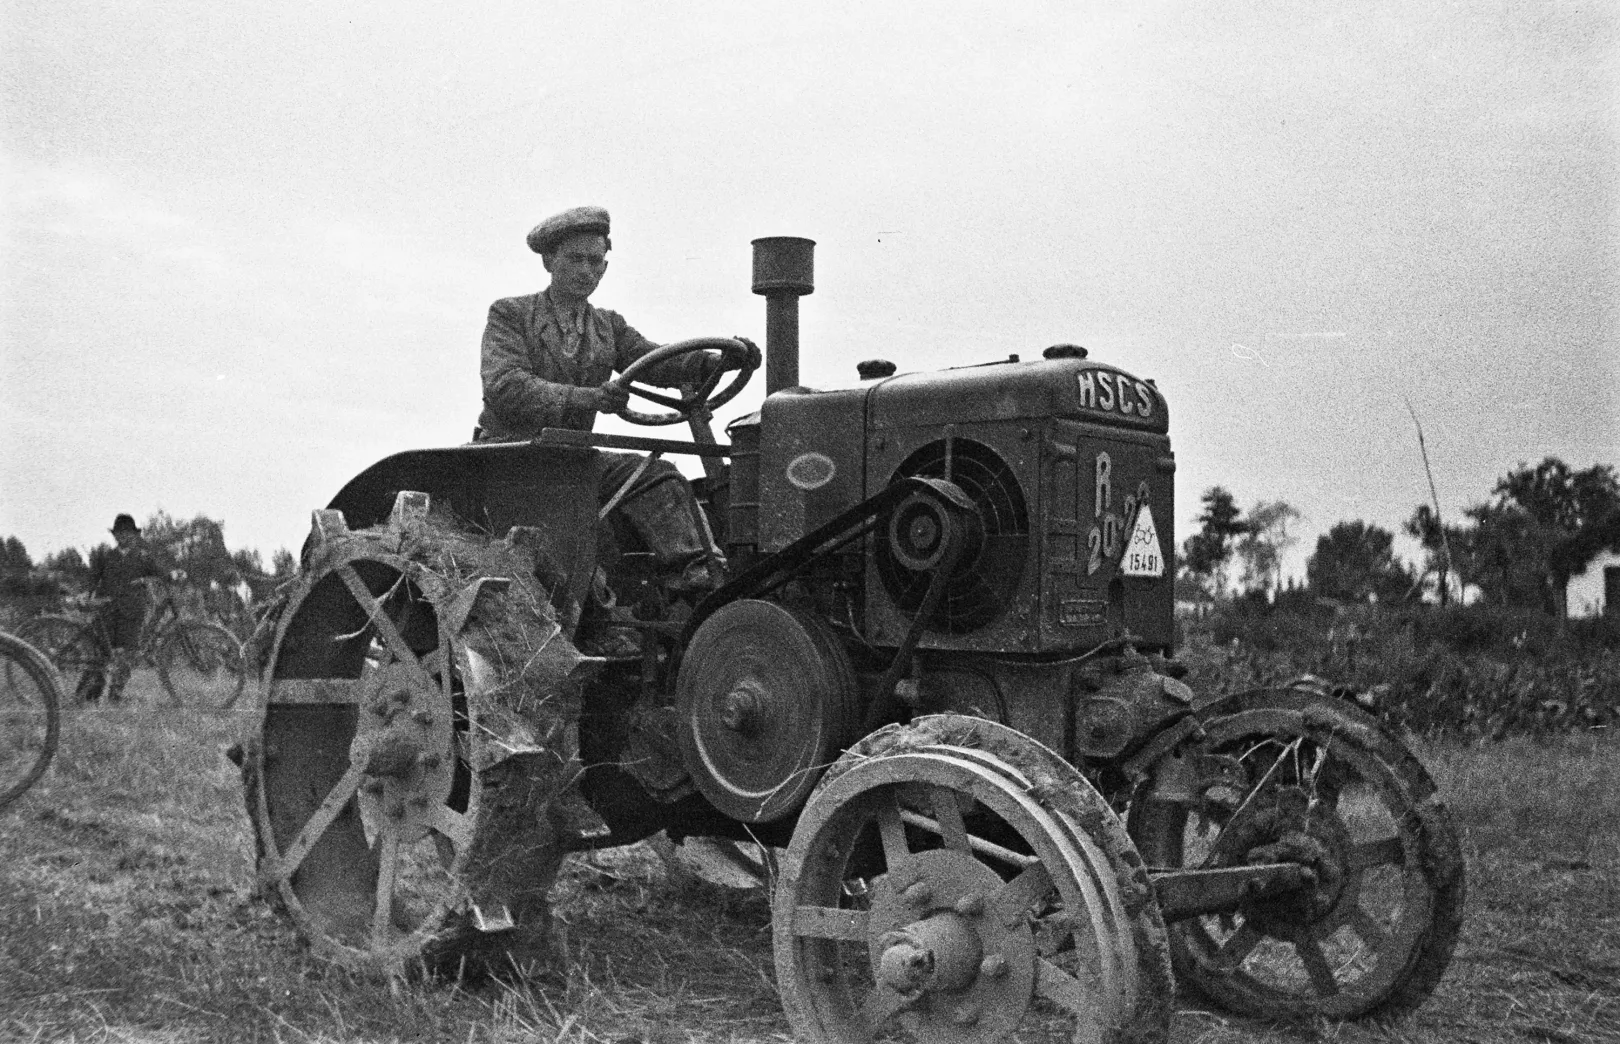 Egy HSCS 20-22 típusú kétütemű izzófejes traktor Szabadszálláson 1949-ben, amelyet a Hofherr-Schrantz-Clayton-Shuttleworth Gépgyári Művek Rt. gyártott. #33577 – Fotó: Fortepan / Kovács Márton Ernő